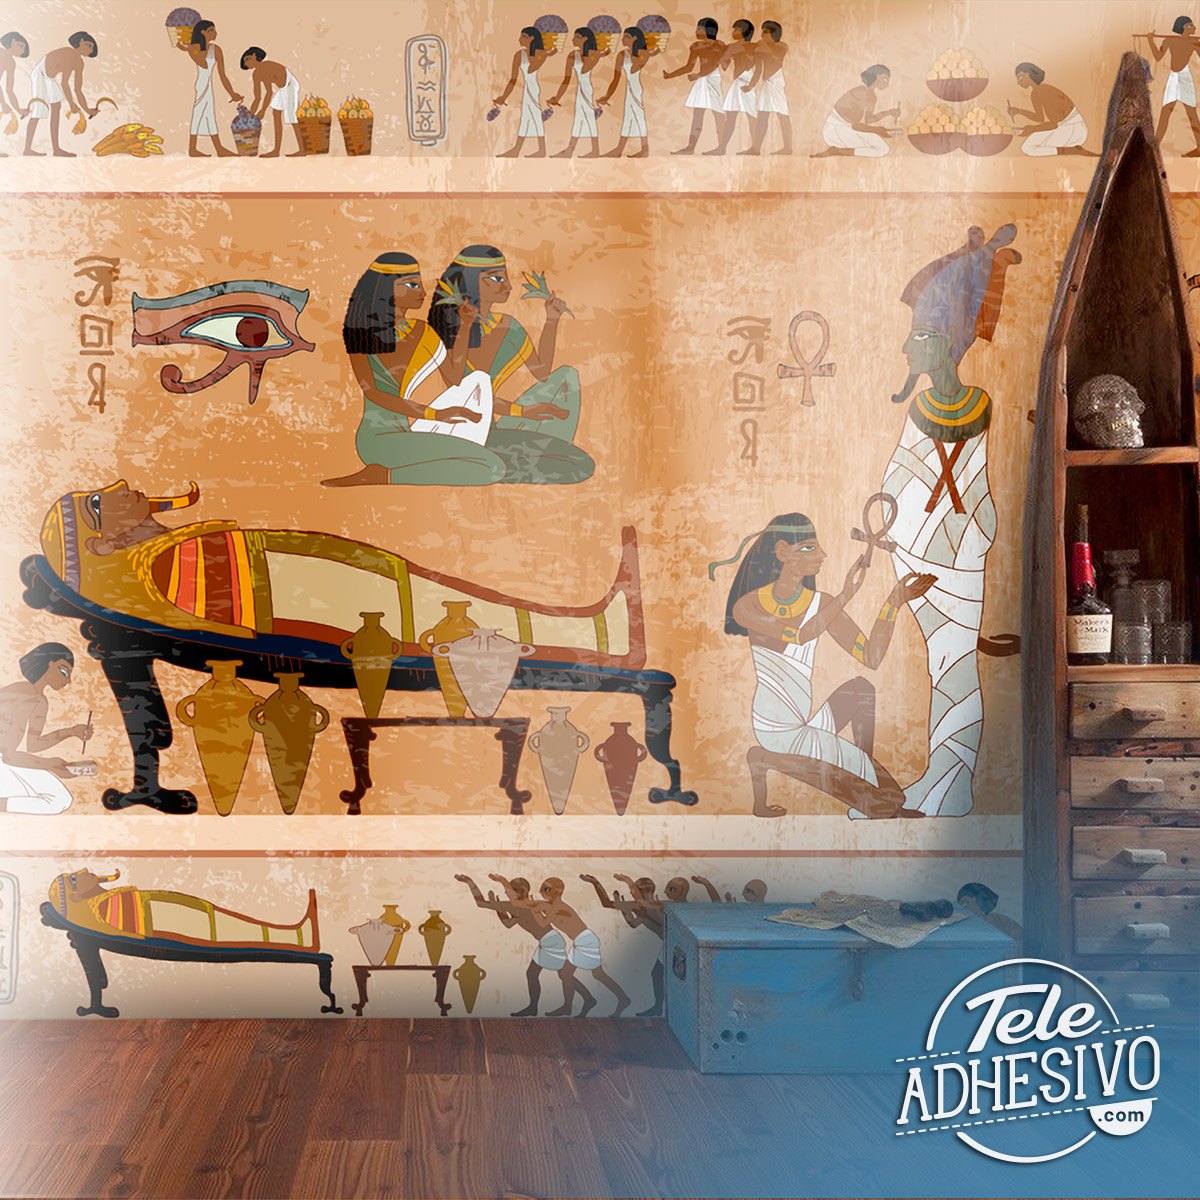 Fototapeten: Altägyptische Gemälde